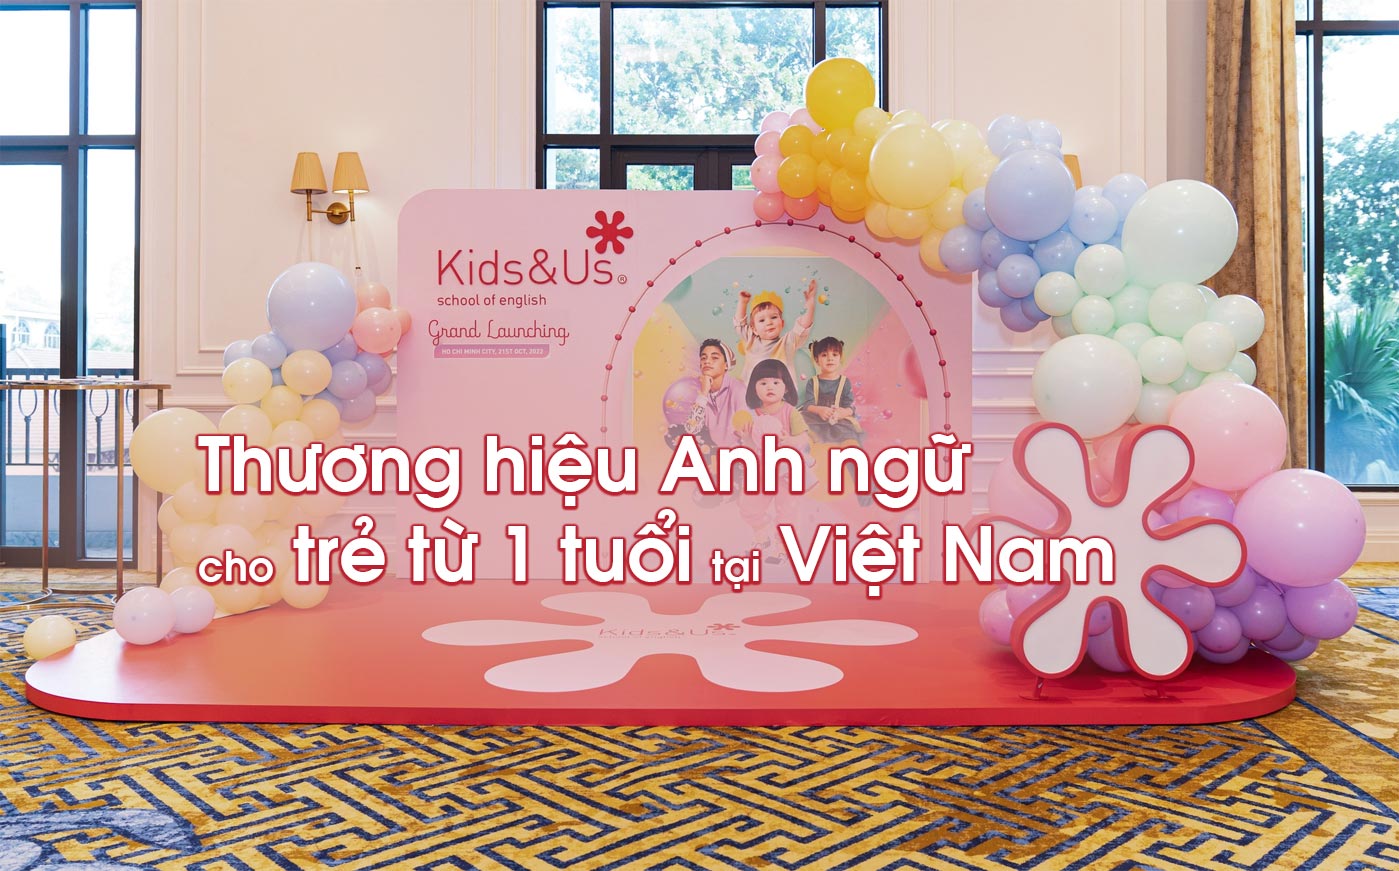 Thương hiệu Anh ngữ cho trẻ từ 1 tuổi tại Việt Nam - Ảnh 1